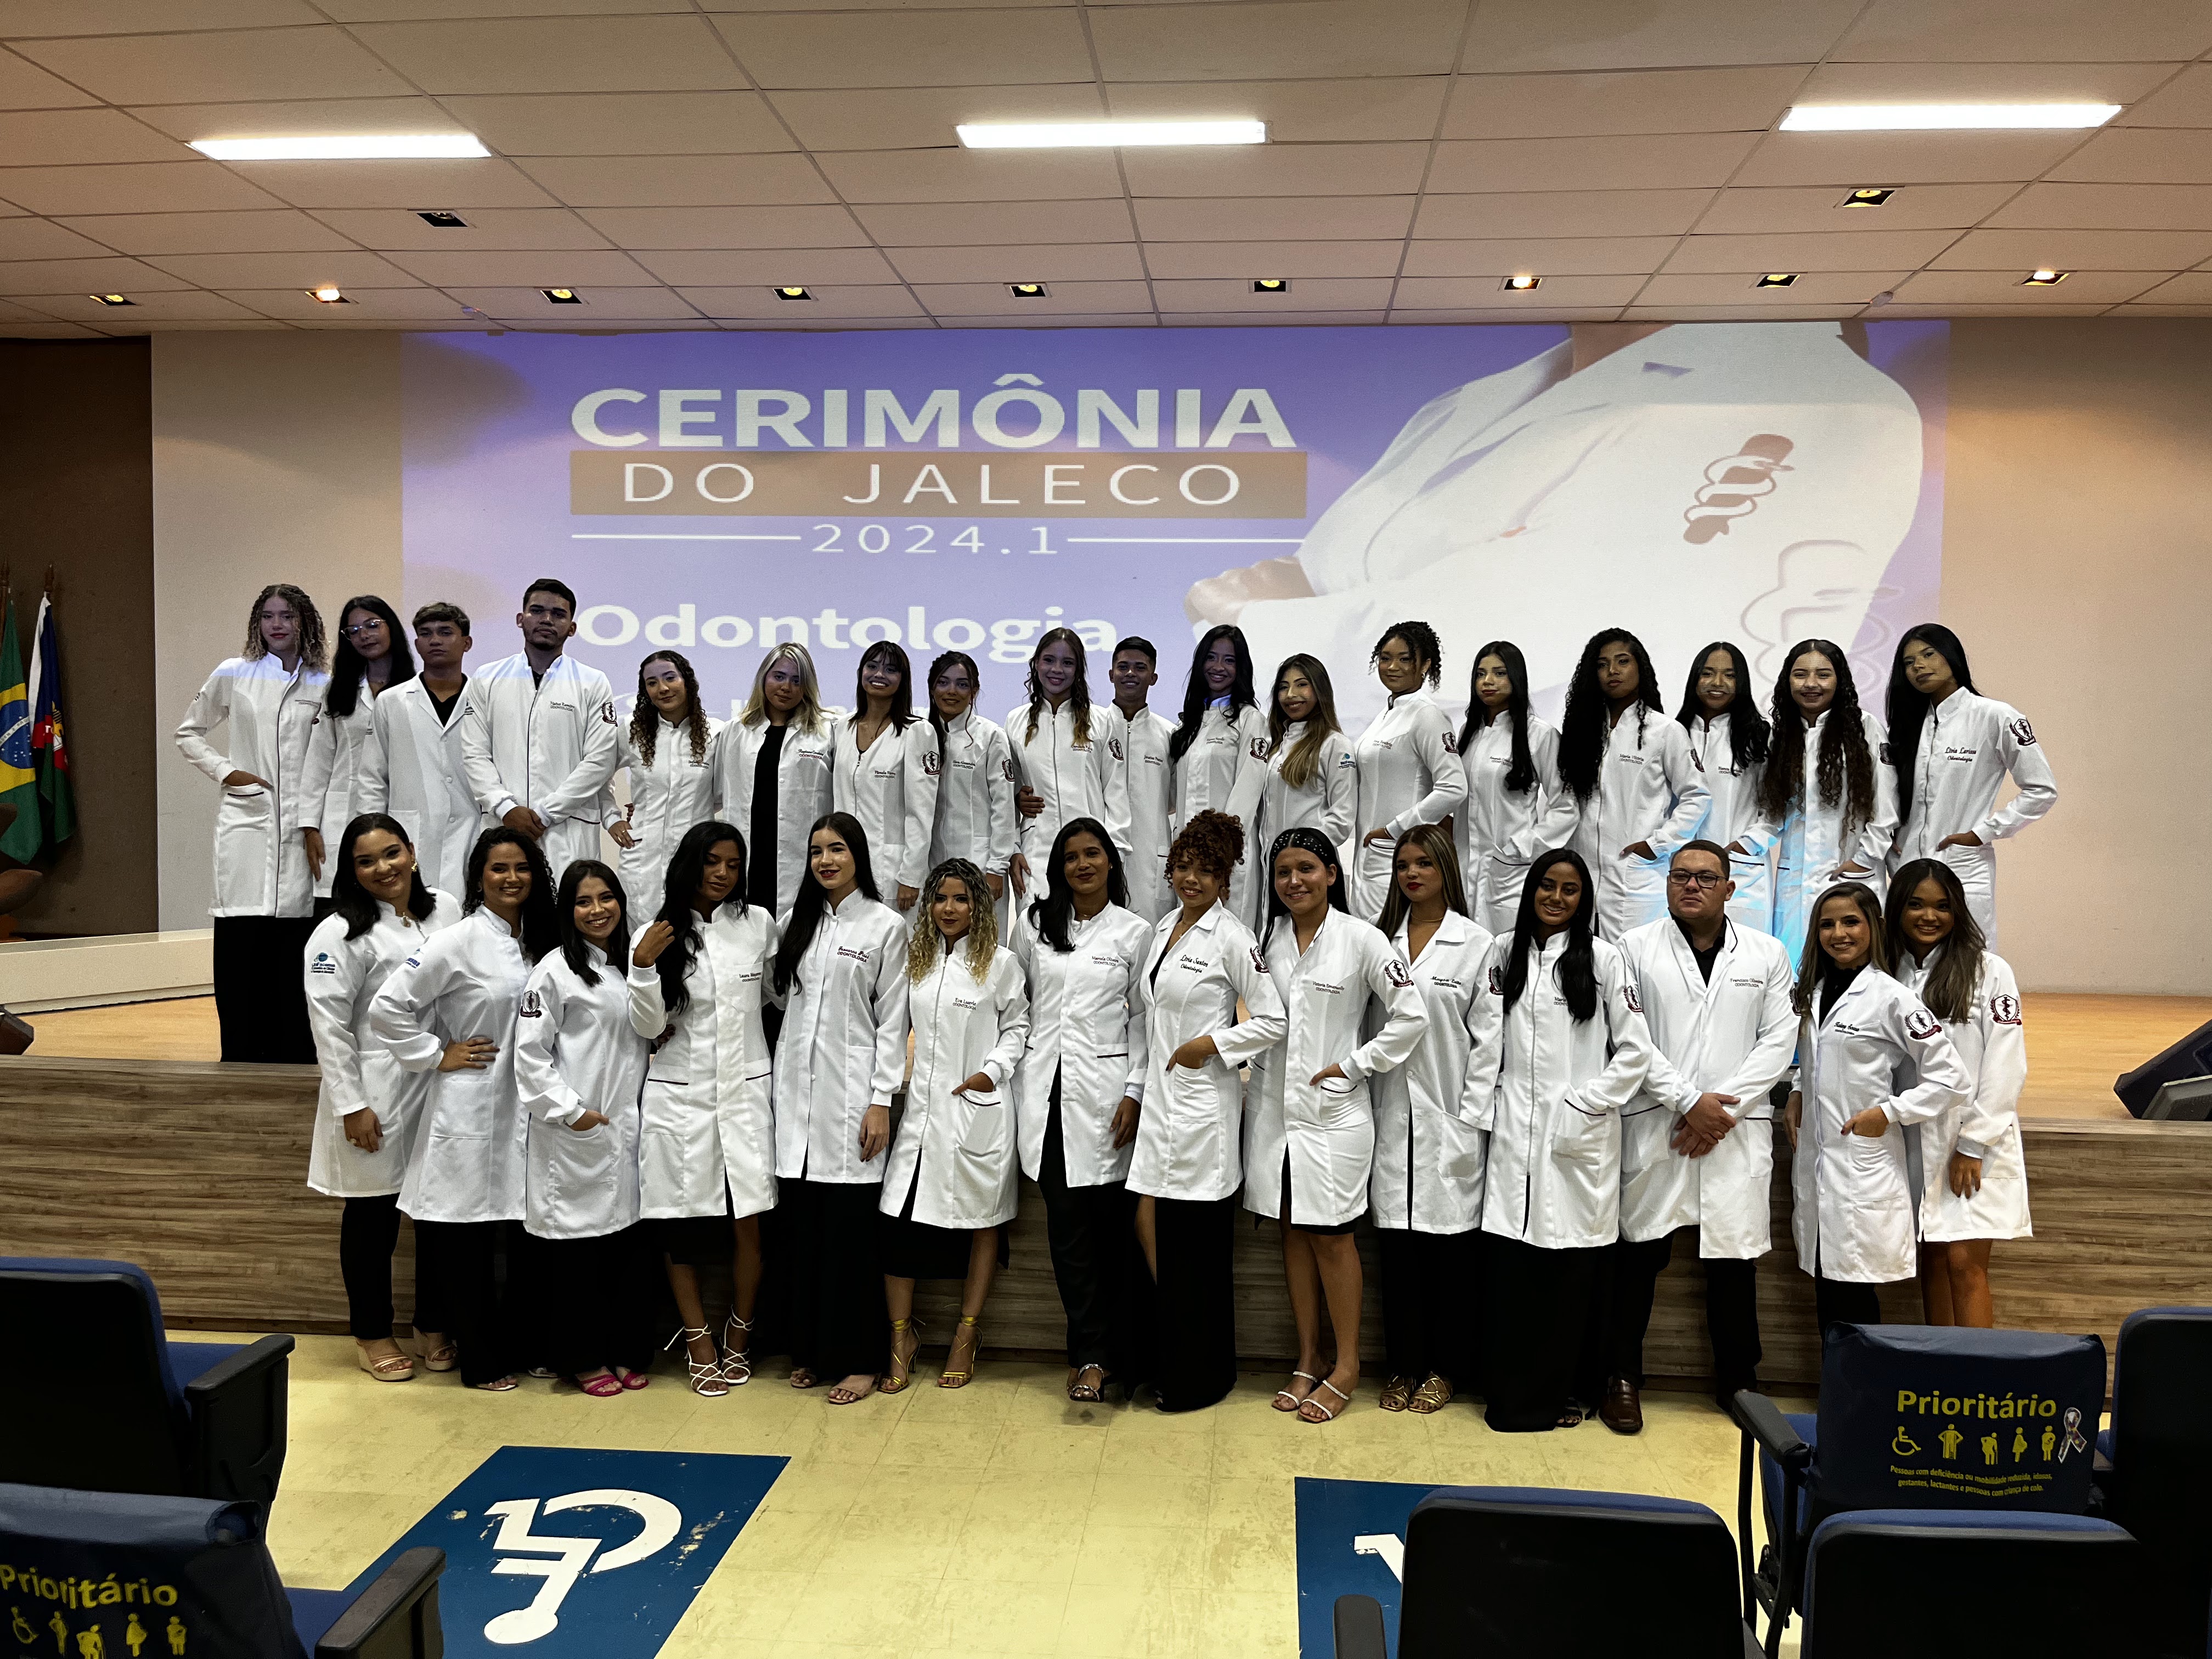 “Cerimônias do Jaleco” dos Cursos de Enfermagem, Nutrição e Odontologia do UniFacema Campus Caxias